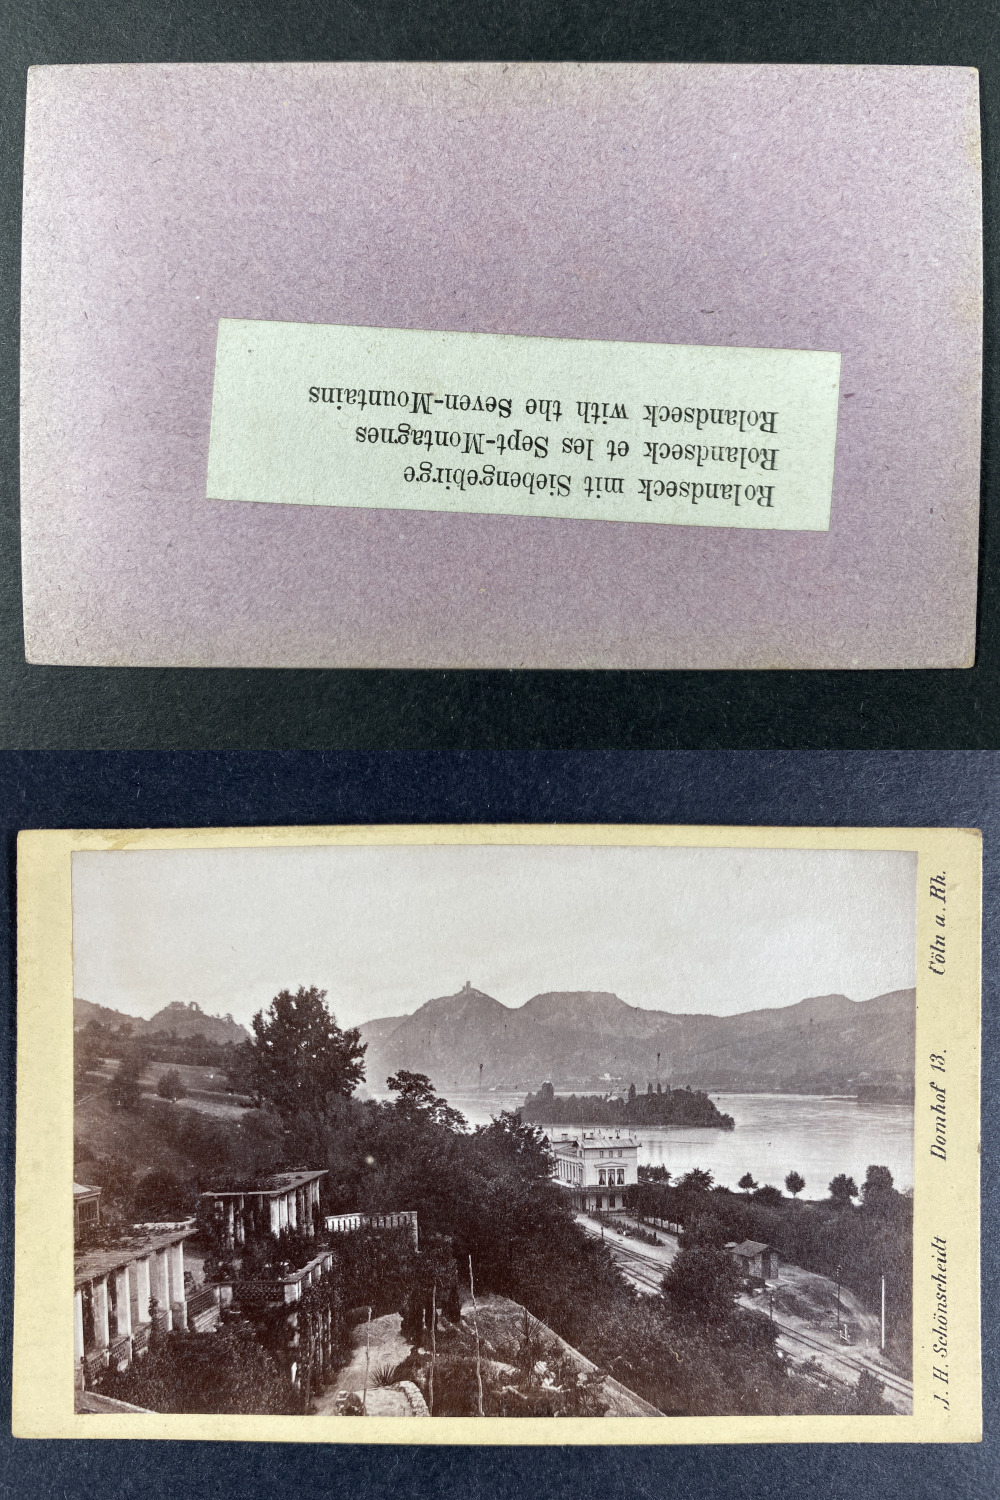 Deutschland, Germany, Rolandseck mit Siebengebirge vintage cdv albumen print, 